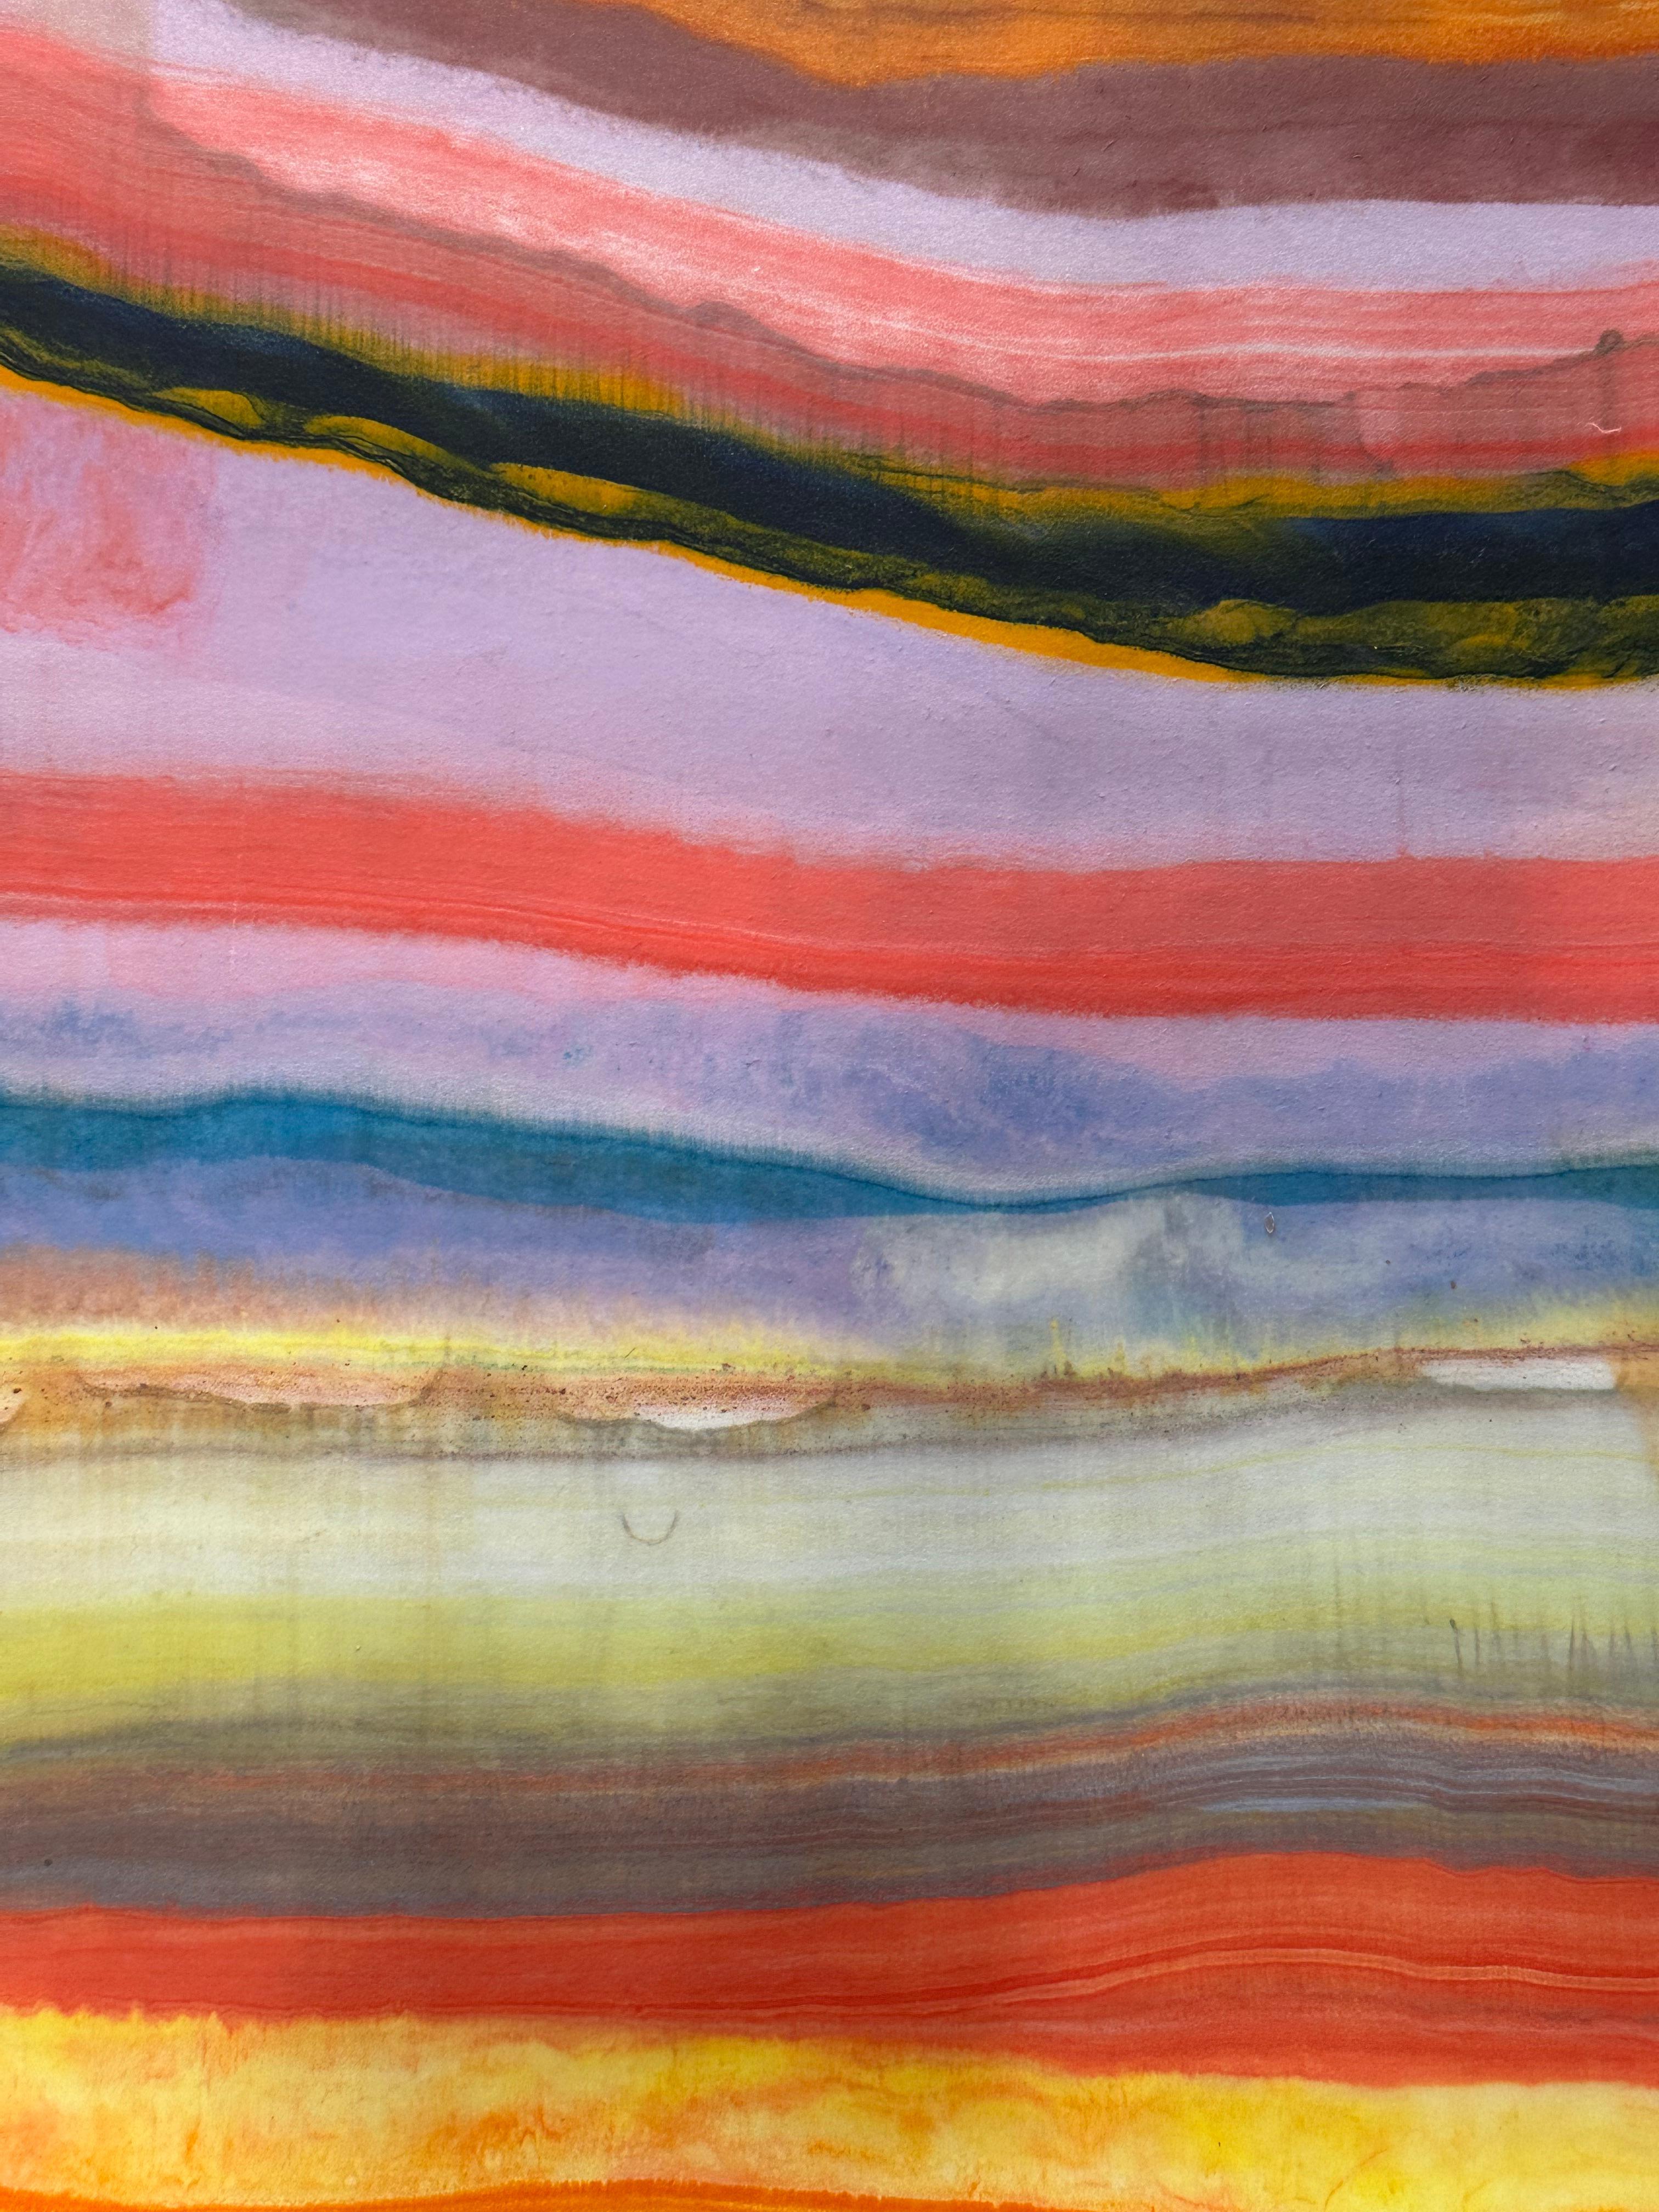 Talking to Rocks 32 de Laura Moriarty est un monotype encaustique multicolore sur papier kozo. Des couches de cire d'abeille pigmentée sur du papier léger créent une composition ondulante suggérant des couches de la croûte terrestre et des